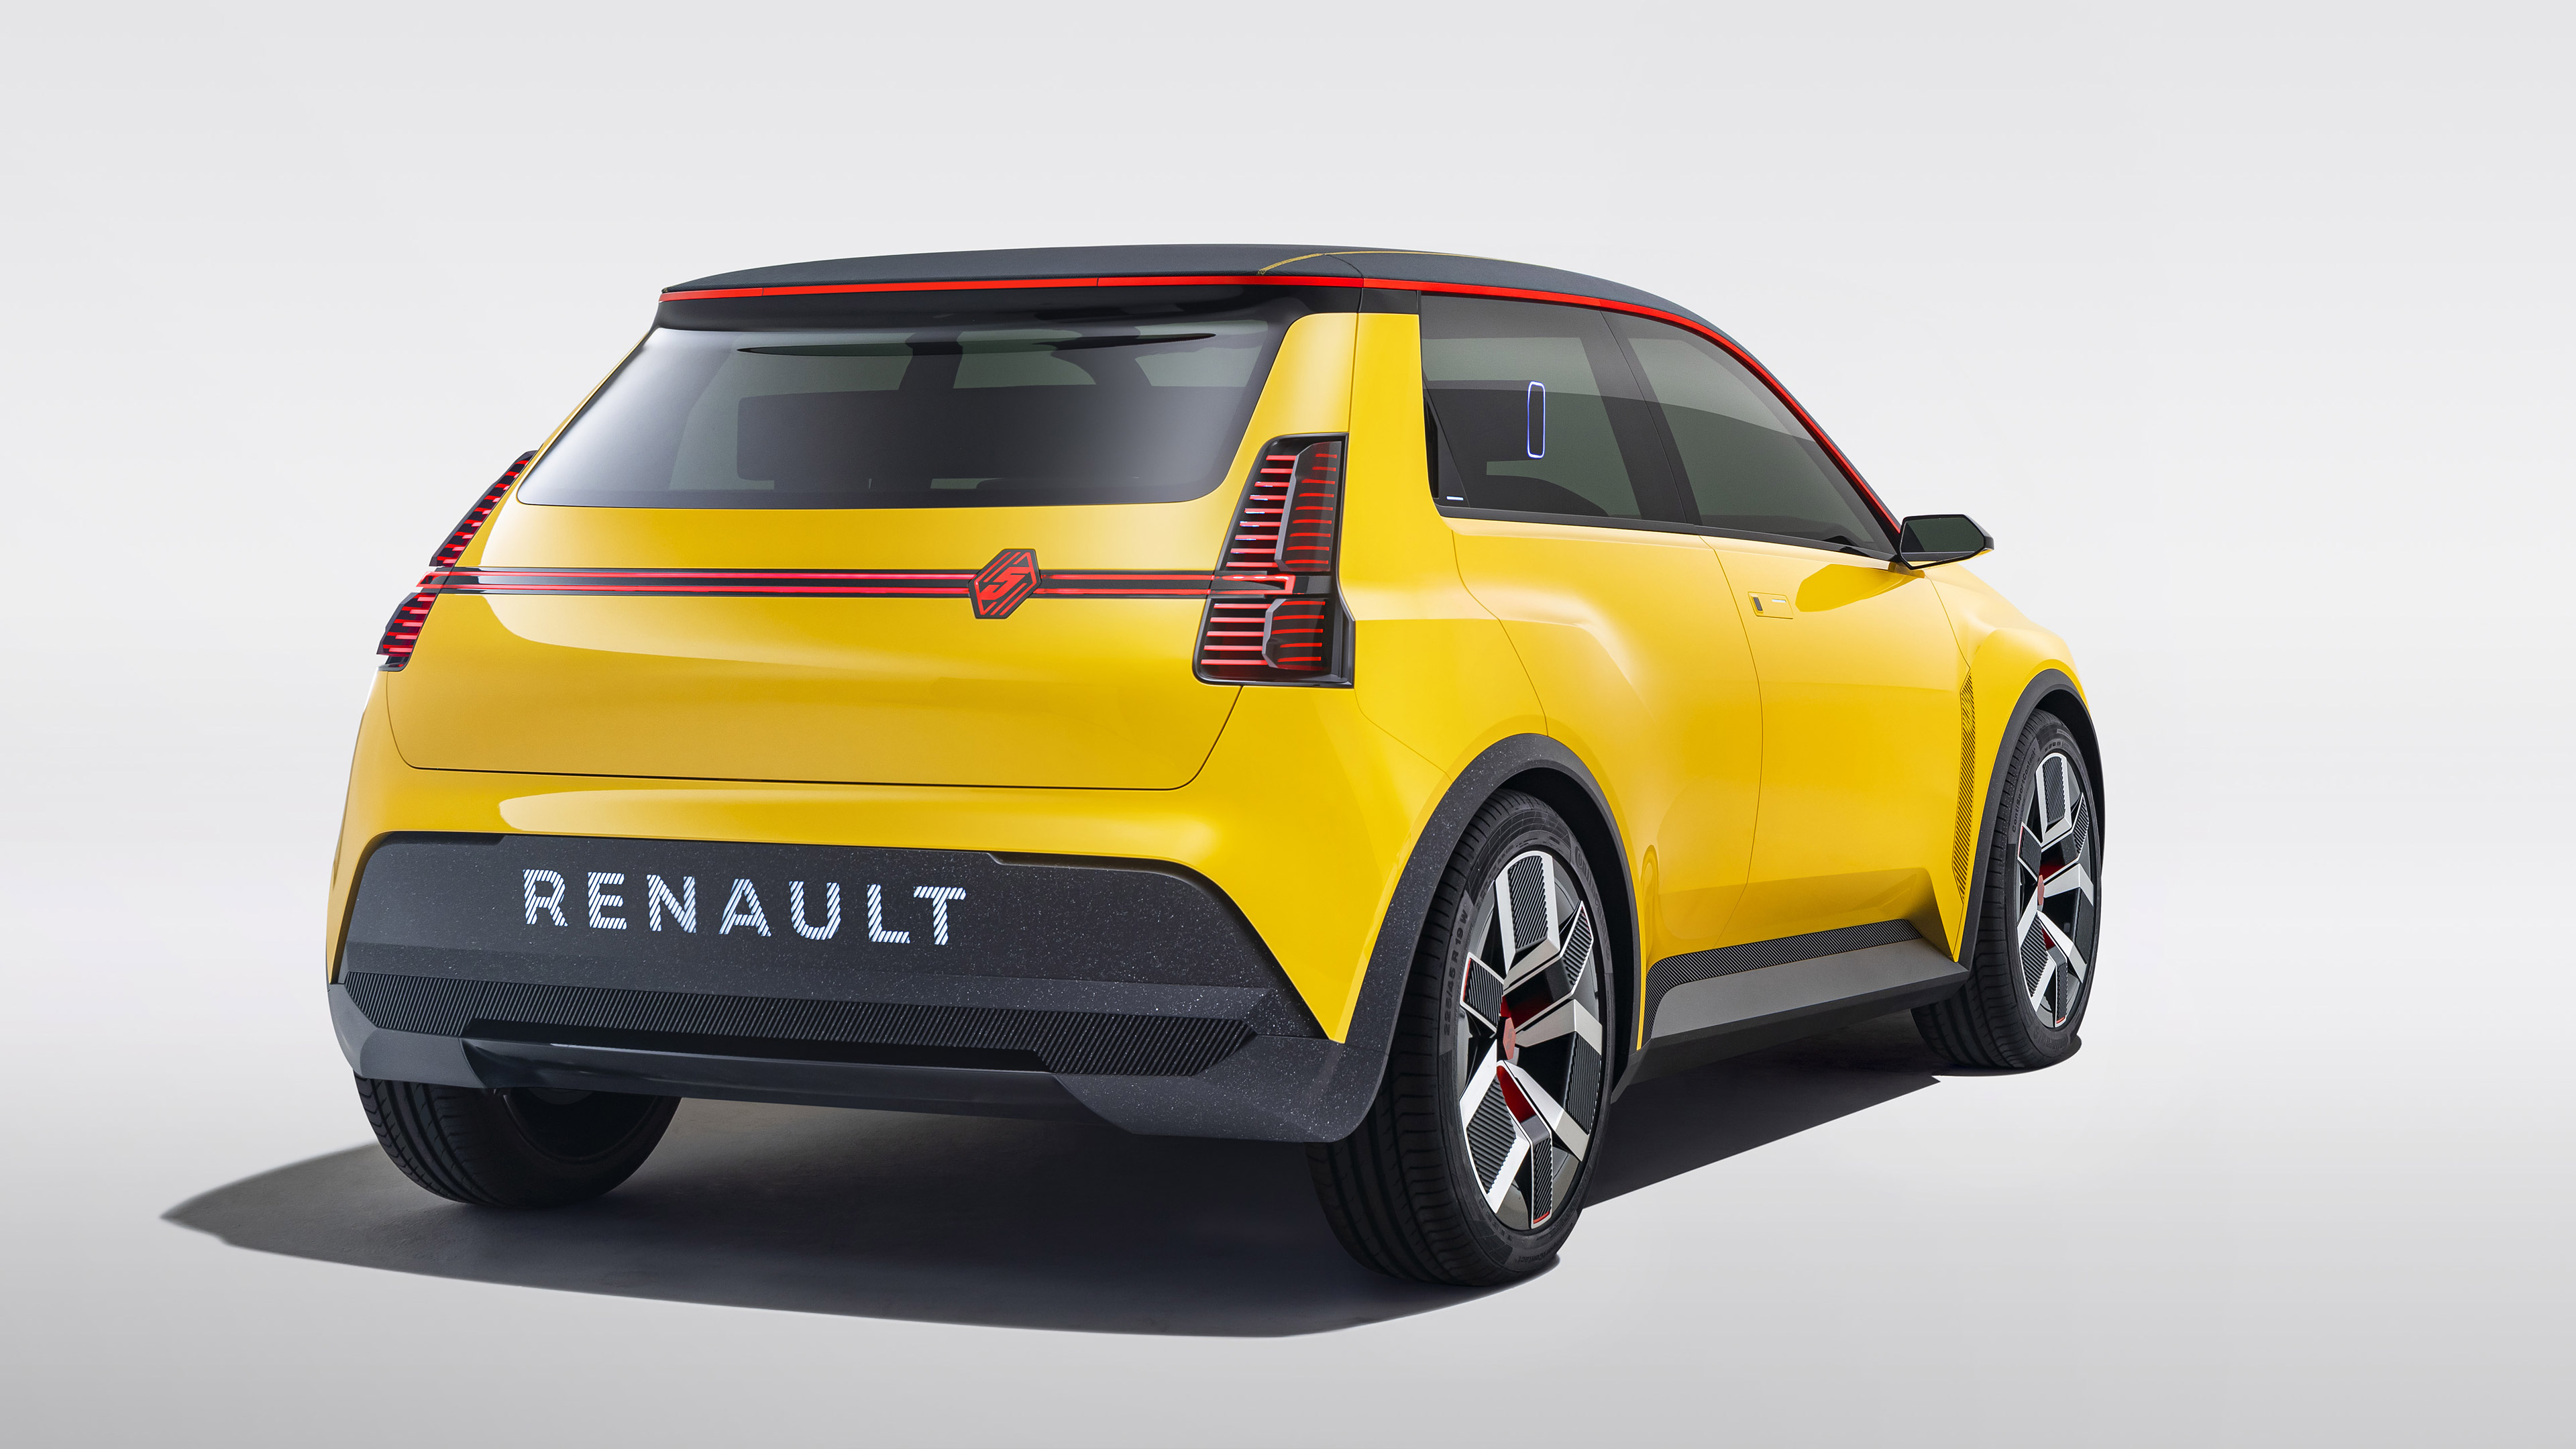 Télécharger des fonds d'écran Renault 5 HD